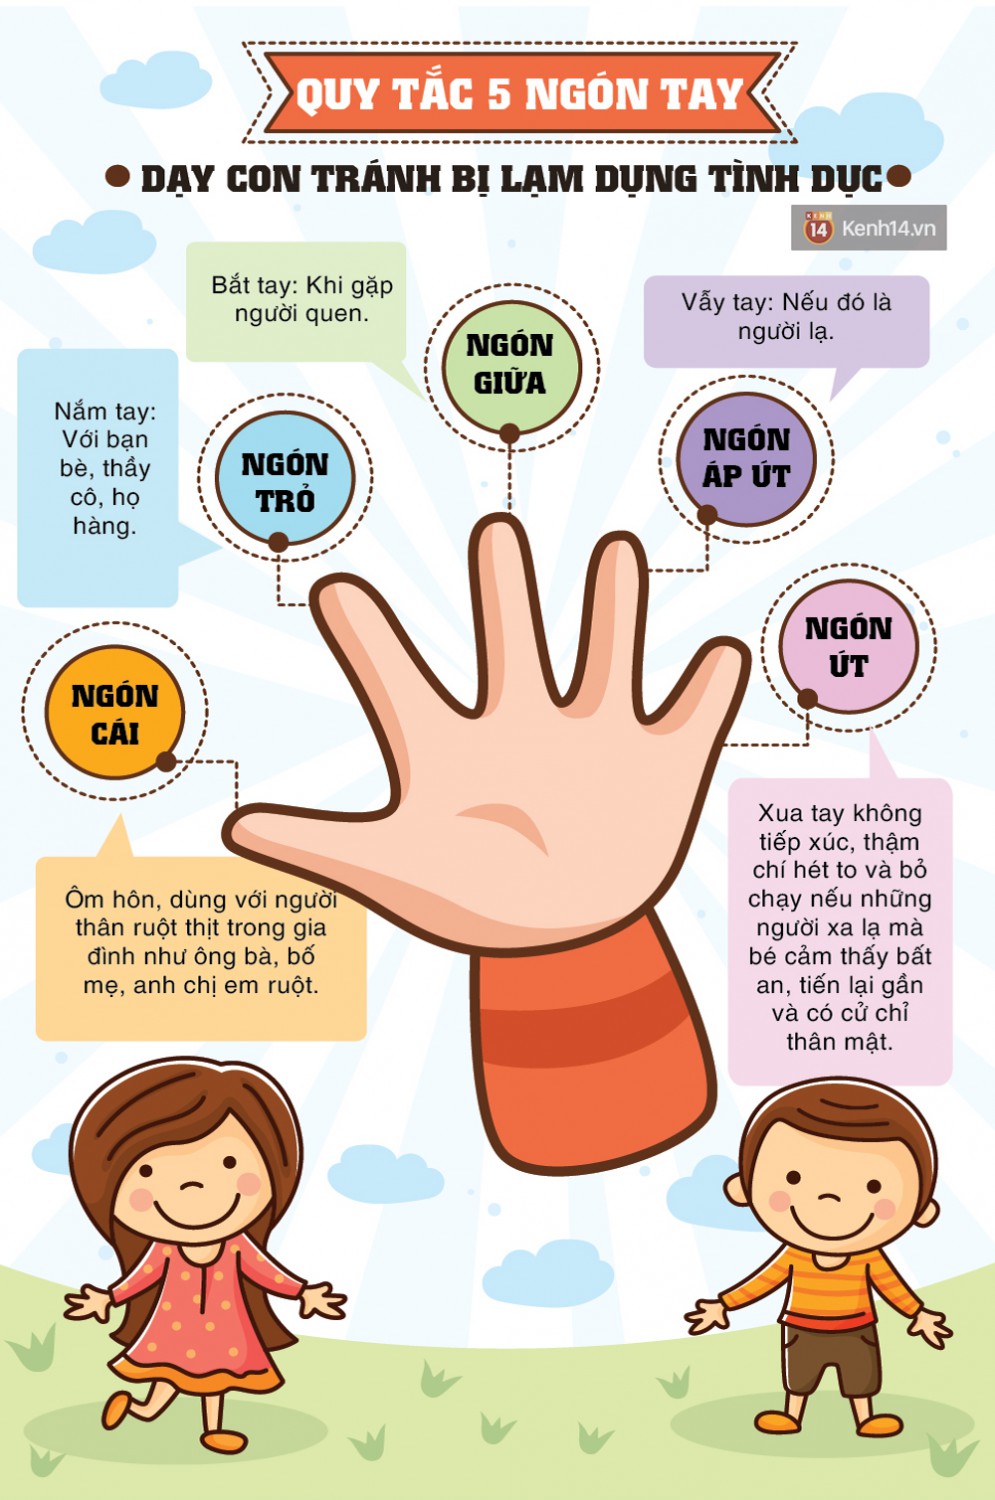 "Quy tắc 5 ngón tay" dạy trẻ tránh bị xâm hại